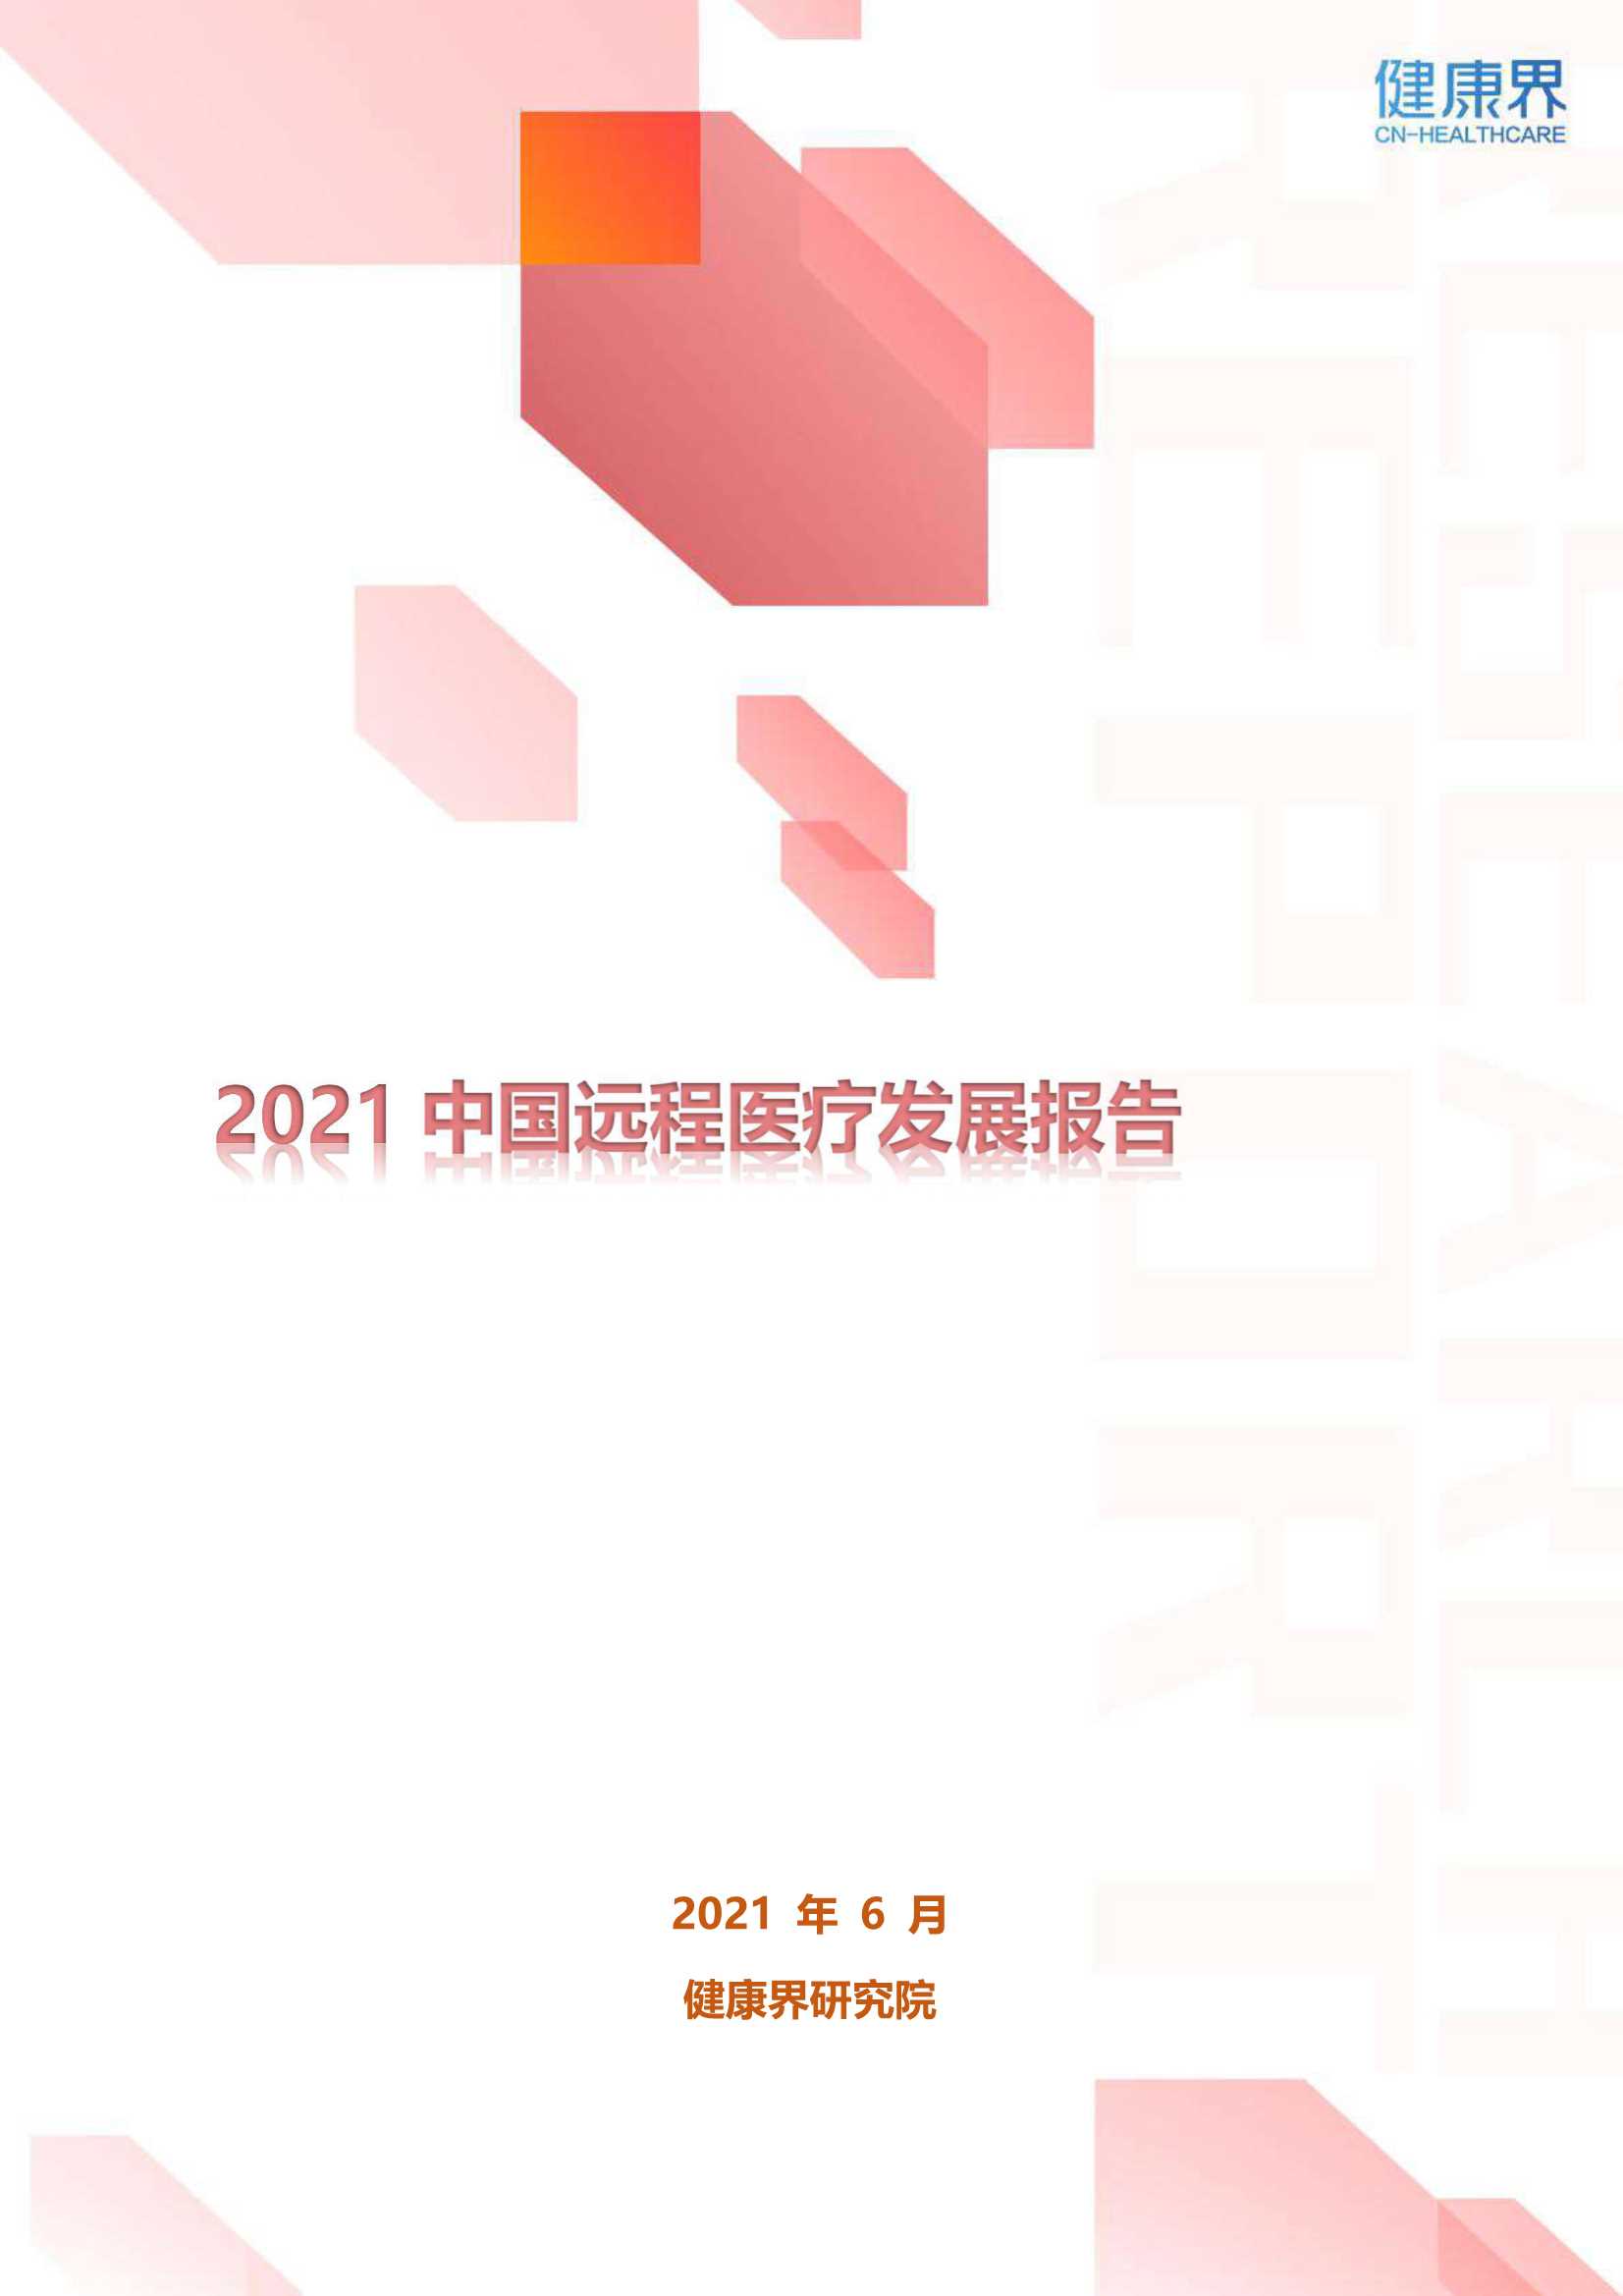 2021中国远程医疗发展报告-2021.11-25页